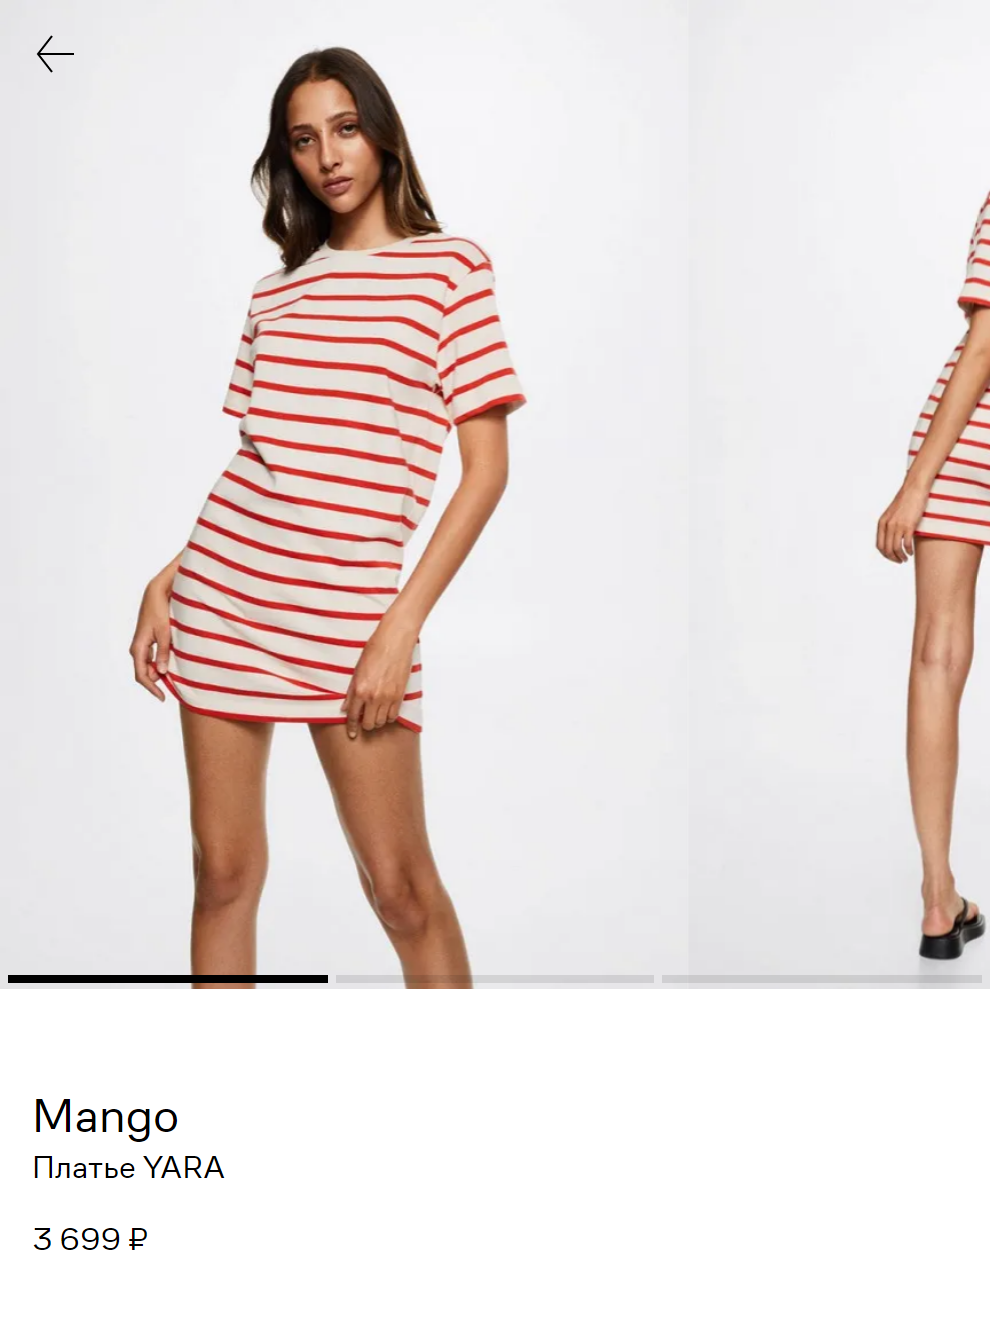 Аналогичное платье-футболка «Манго». Цены на такие модели из качественной ткани начинались от 1500 ₽, а здесь оно стоит 3699 ₽. Источник: lamoda.ru